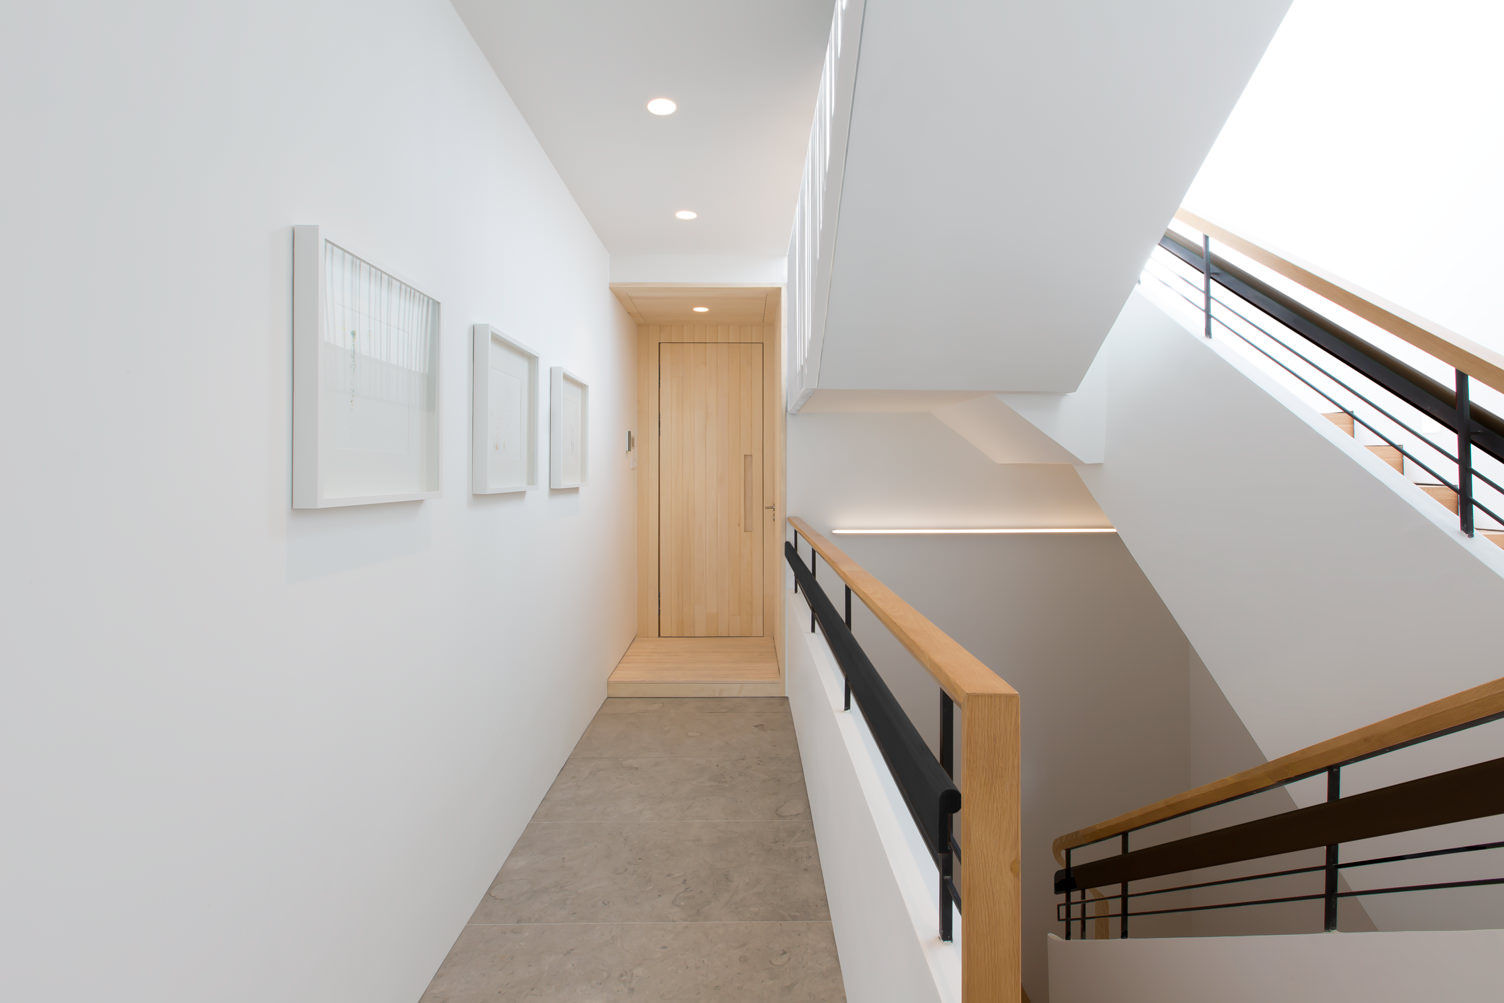 Paintings homify Modern corridor, hallway & stairs Wood Wood effect white,minimal,stair,wall painting,simple,clean